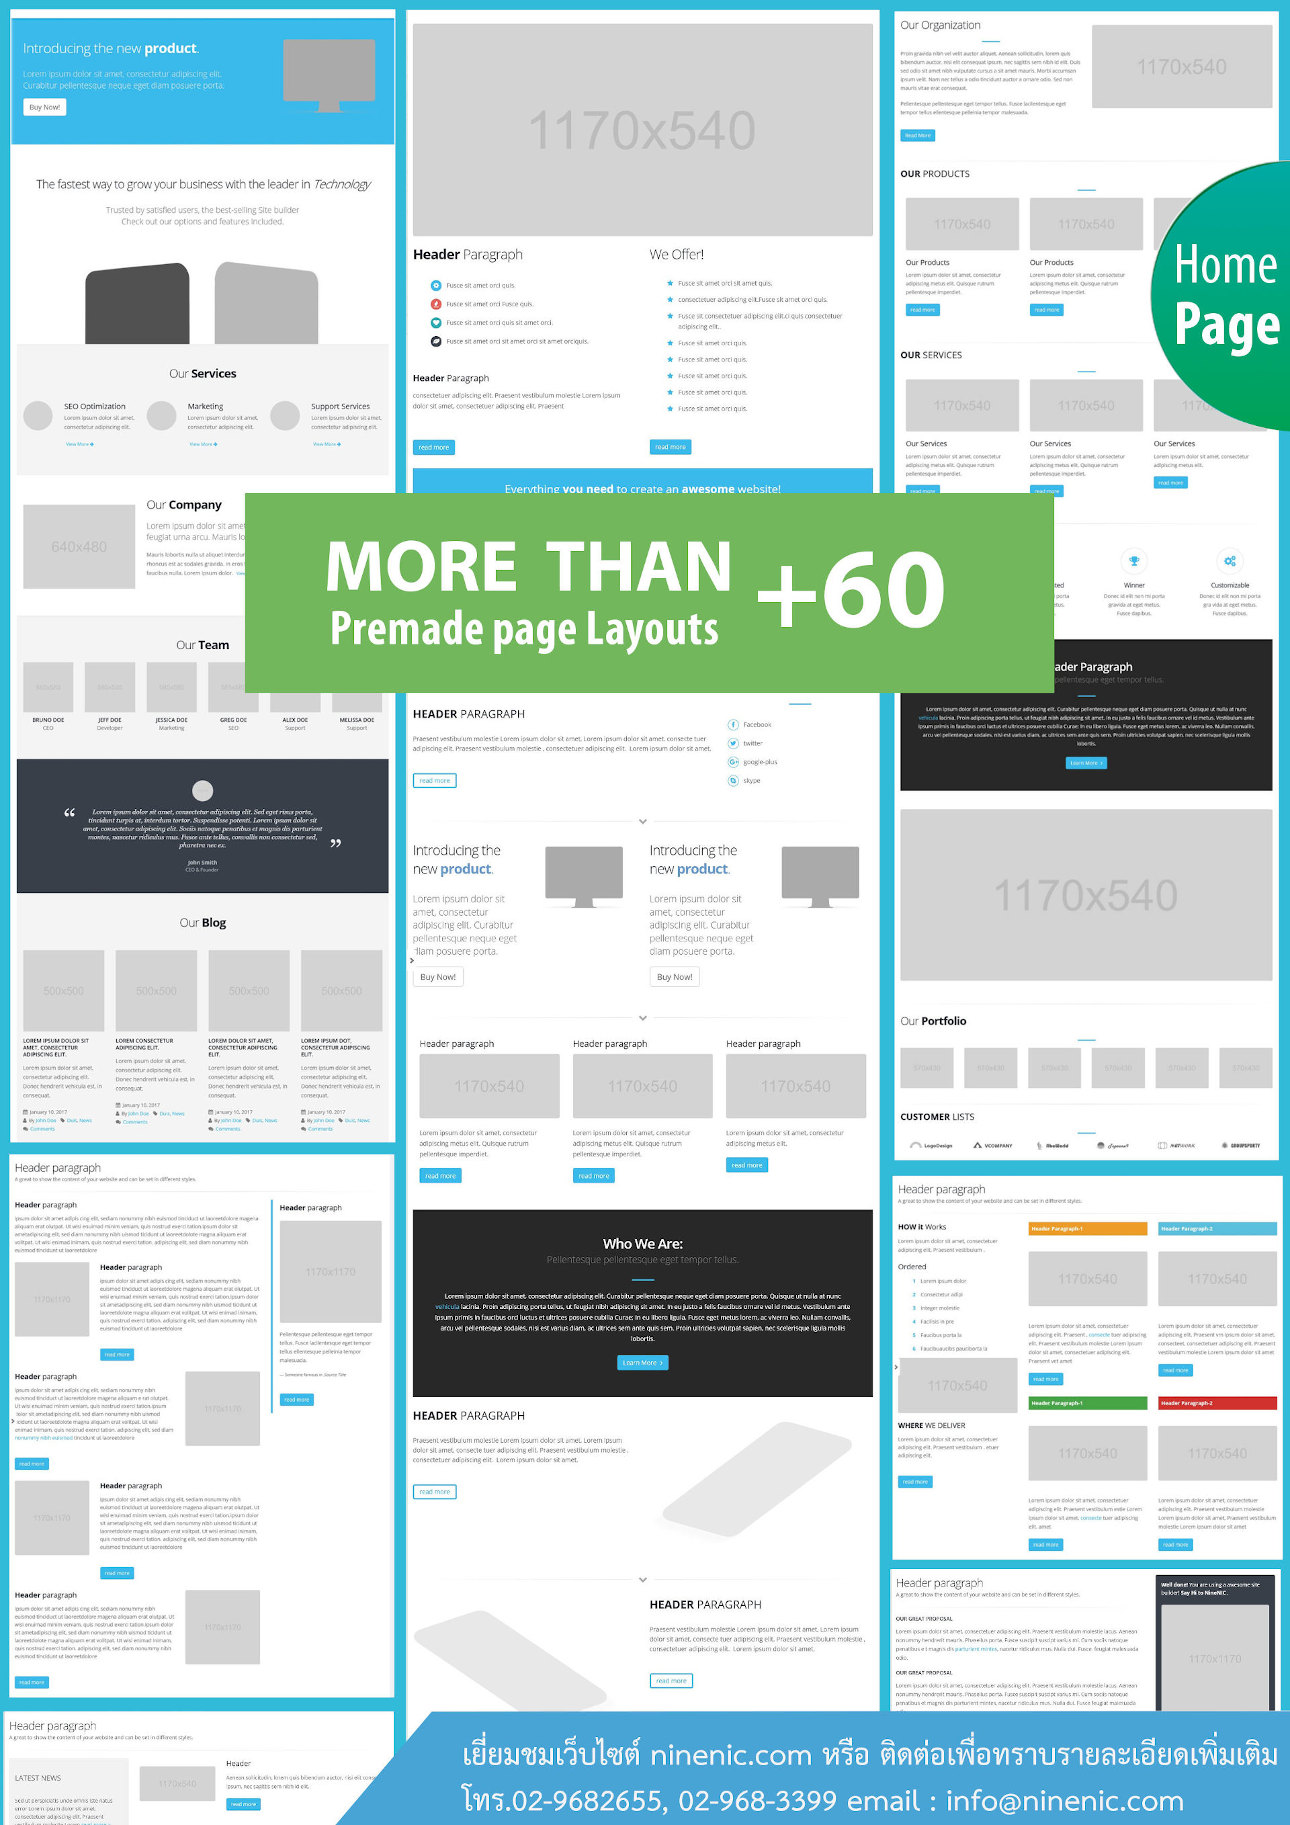 Premade page layout -โบรชัวร์เว็บสำเร็จรูปสำหรับองค์กร ธุรกิจ-เว็บไซต์สำเร็จรูปไทย บริการ เว็บสำเร็จรูปใช้งานง่าย เว็บสำเร็จรูปสำหรับธุรกิจและอีคอมเมอร์ส รองรับอุปกรณ์โทรศัพท์มือถือ แท็บเล็ต บริการเว็บไซต์สำเร็จรูป สำหรับเปิดร้านค้าออนไลน์ ขายของออนไลน์ ขายสินค้าออนไลน์ พร้อมตระกร้าสินค้า ecommerce solution - เว็บสำเร็จรูป ฟรีโดเมน ฟรี SSL ฟรีเว็บไซต์เทมเพลต Layout สำเร็จรูป แนะนำเว็บสำเร็จรูปและการสร้างเว็บไซต์ ออกแบบเว็บไซต์ บริการดี ดูแลดี แนะนำโดย เว็บไซต์สำเร็จรูปไทย.com เว็บไซต์สำเร็จรูปพร้อมฟีเจอร์มากมาย เว็บไซต์สำเร็จรูปที่มี รูปแบบเว็บเพจที่ตรงกับความต้องการของคุณ สนับสนุนเครื่องมือค้นหาจาก Search engine รูปแบบเว็บไซต์สวยงาม Themes & Template พร้อม Layout ของเว็บไซต์สำเร็จรูป